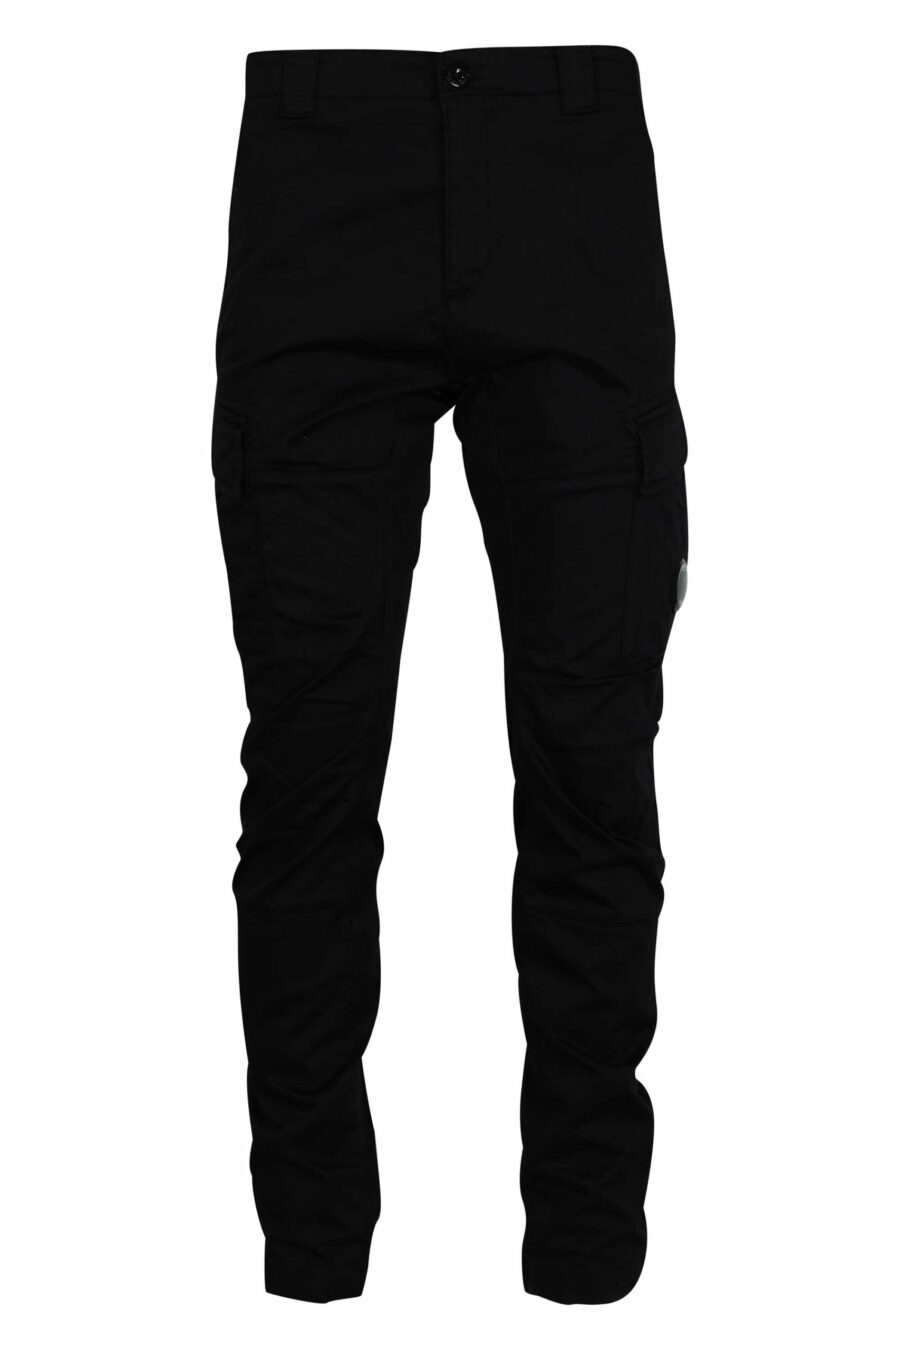 Pantalón negro estilo cargo con minilogo lente - 7620943717808 scaled